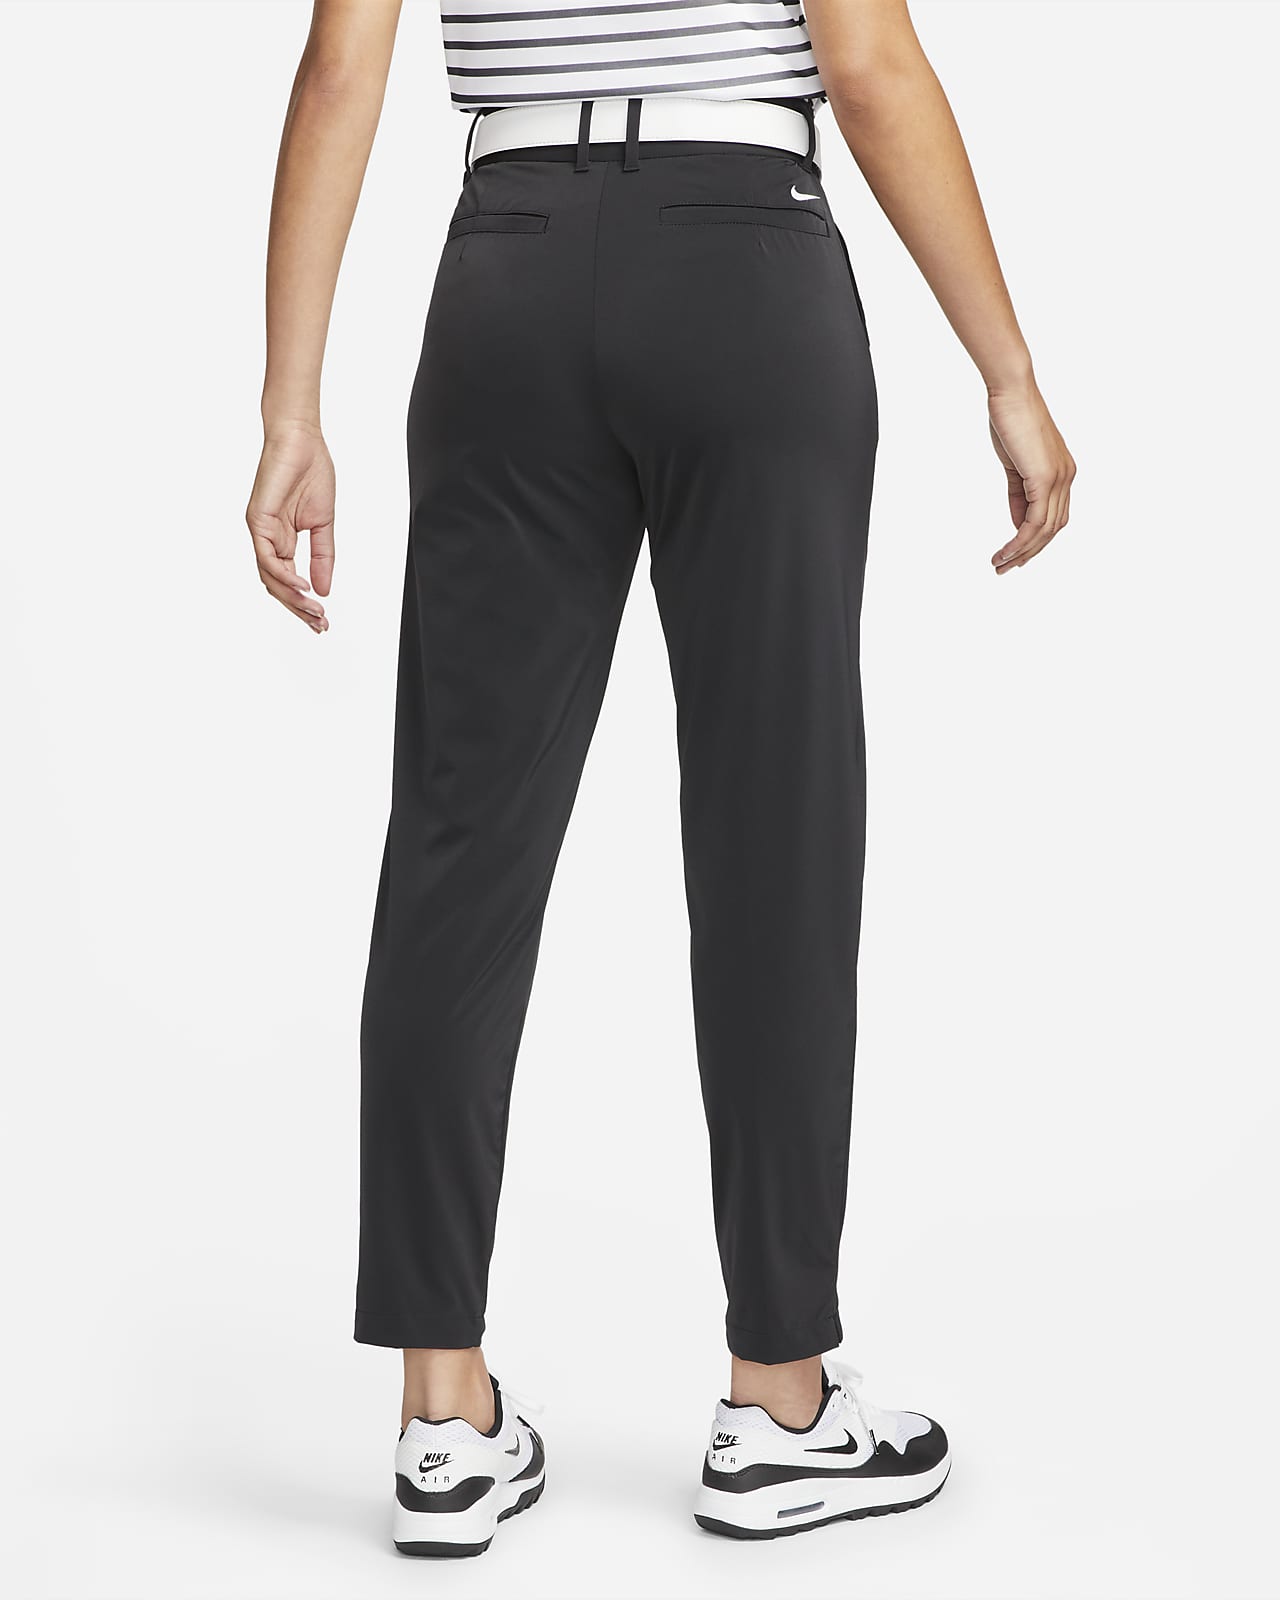 Nike Golf Trousers & Pants. Nike CA